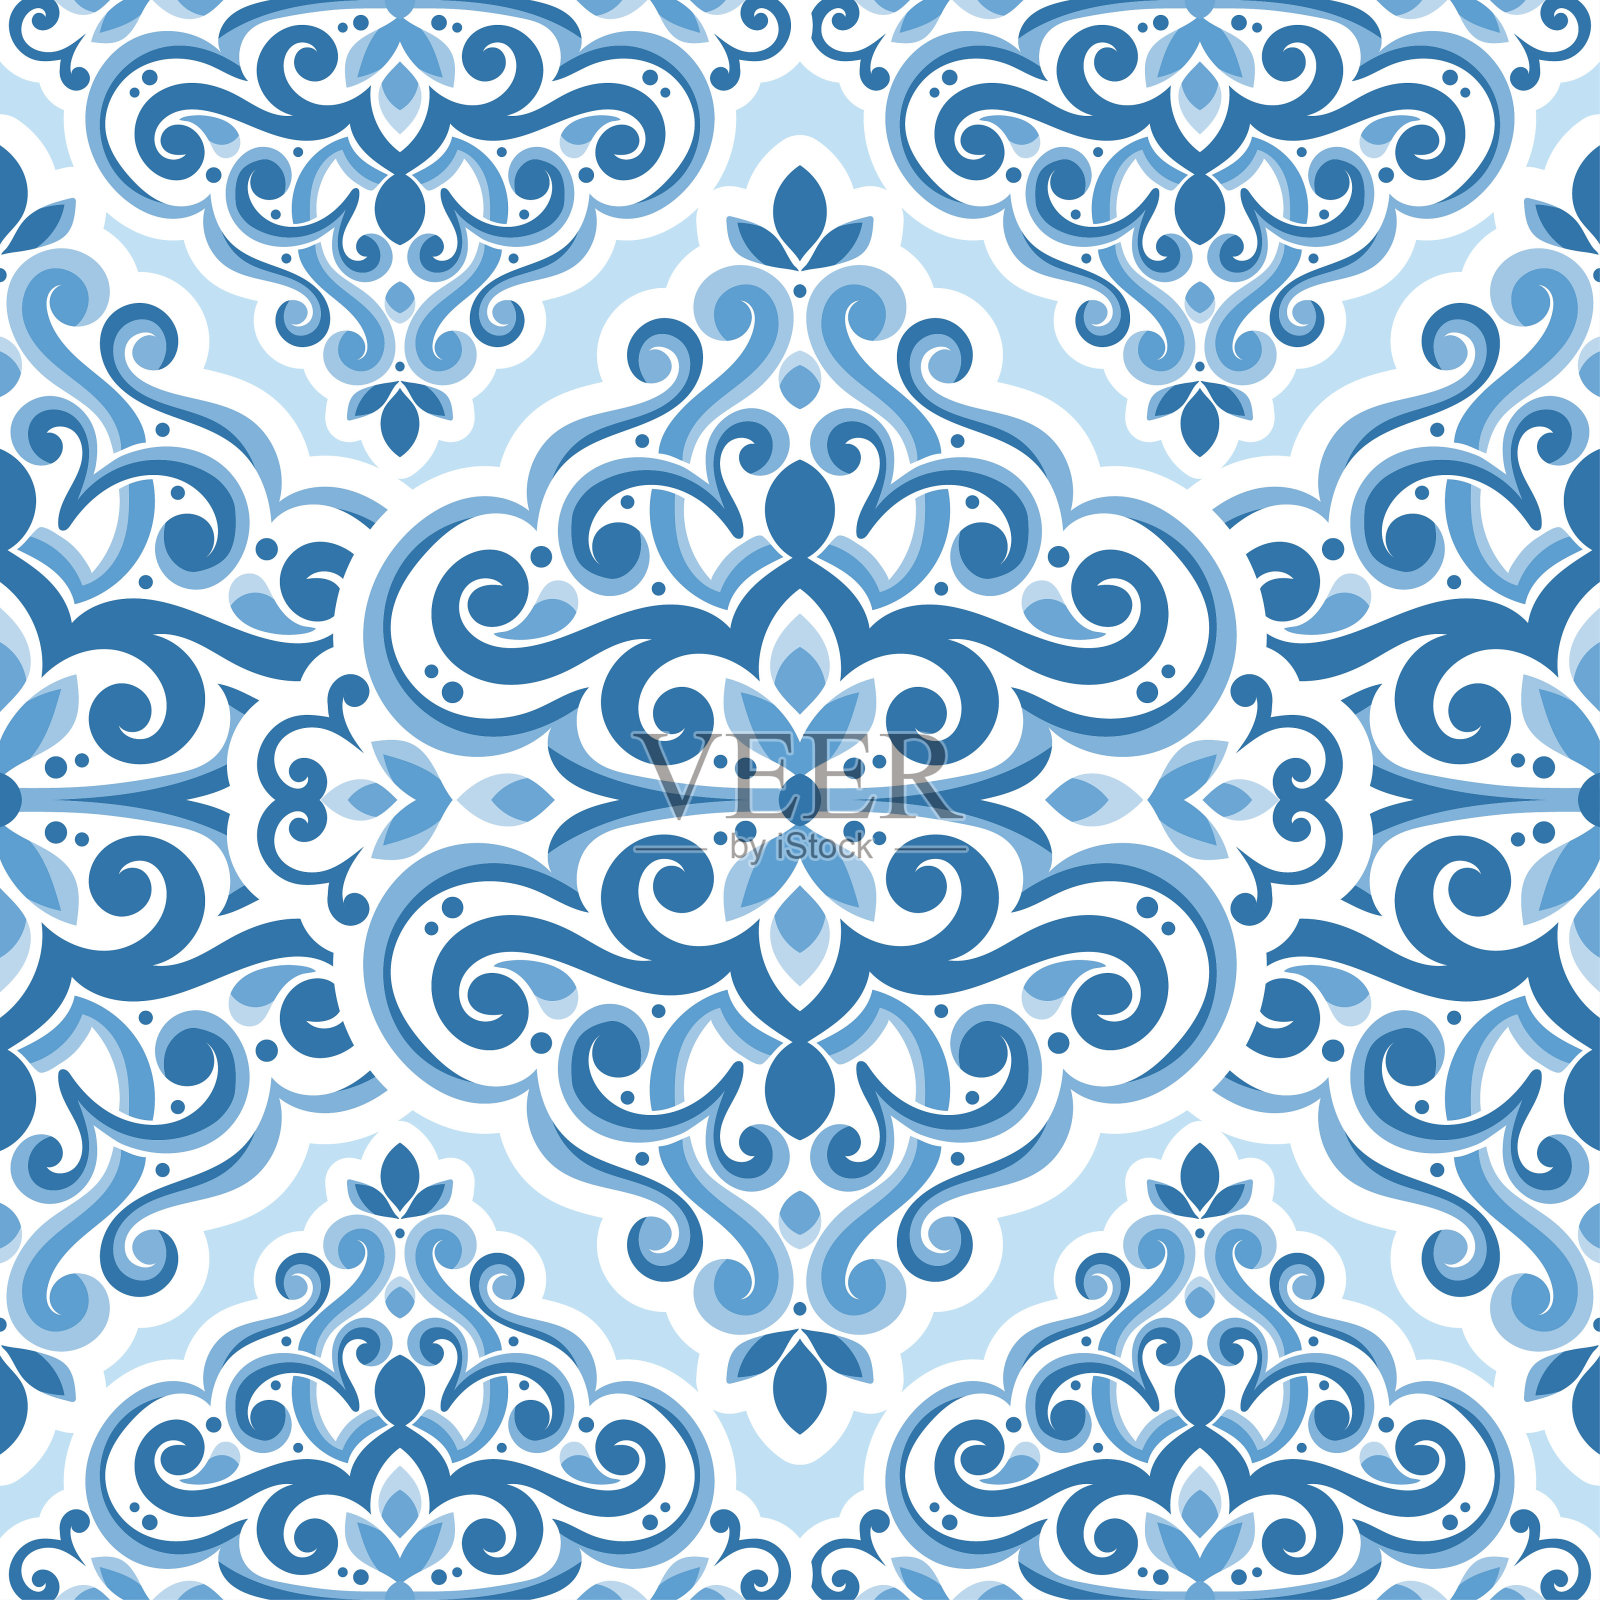 蓝色和白色缎子矢量无缝模式。复古,佩斯利元素。传统的土耳其的图案。非常适合织物和纺织品，墙纸，包装或任何理想的想法。插画图片素材